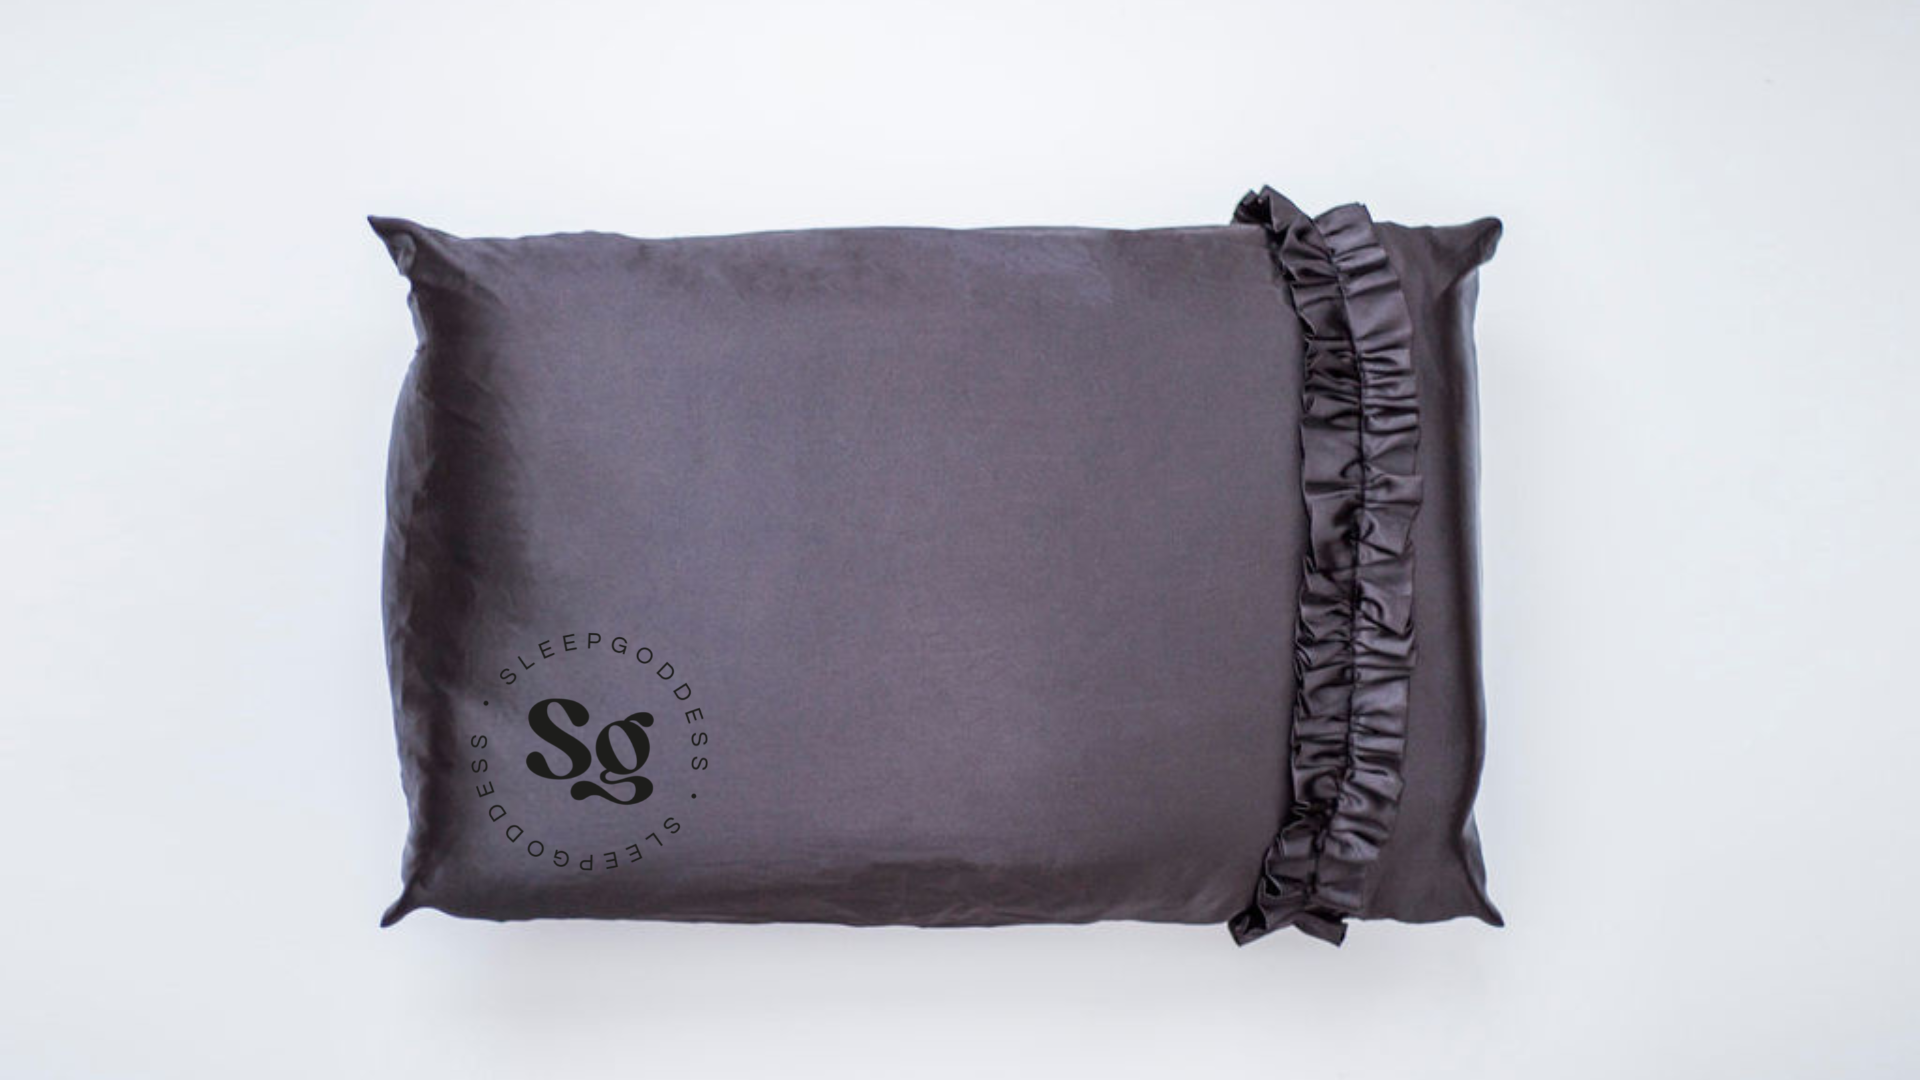 Satin Beauty Sleep Slip-Over Pillow case Midnight